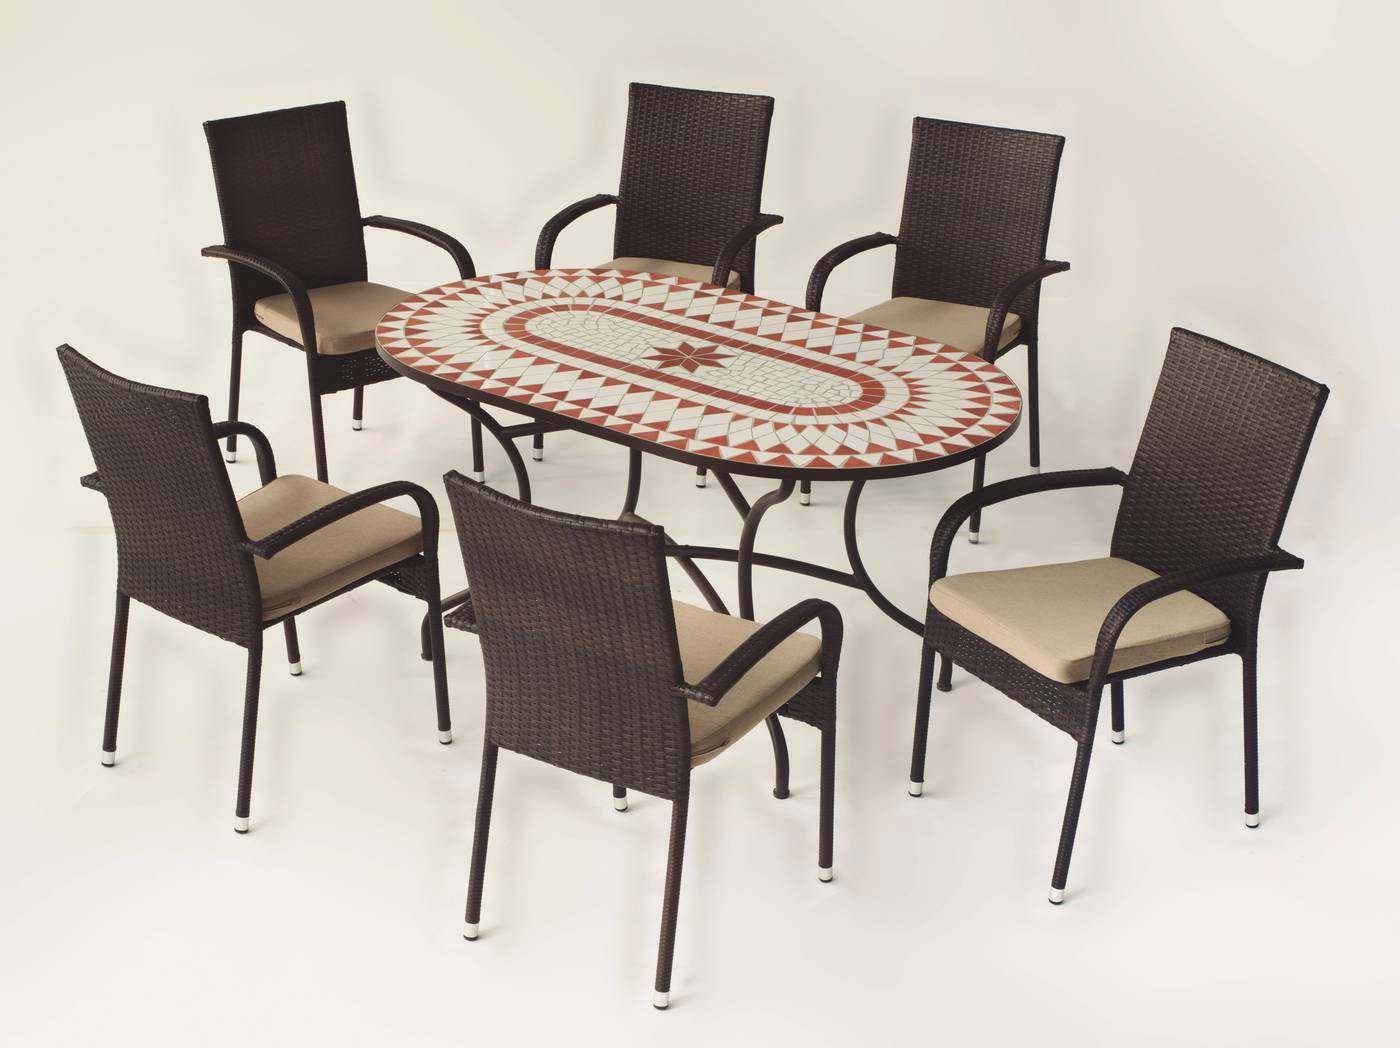 Conjunto Mosaico Neypal150-Bergamo - Conjunto de forja color bronce: mesa con tablero mosaico de 150 cm + 6 sillones con cojines asiento.